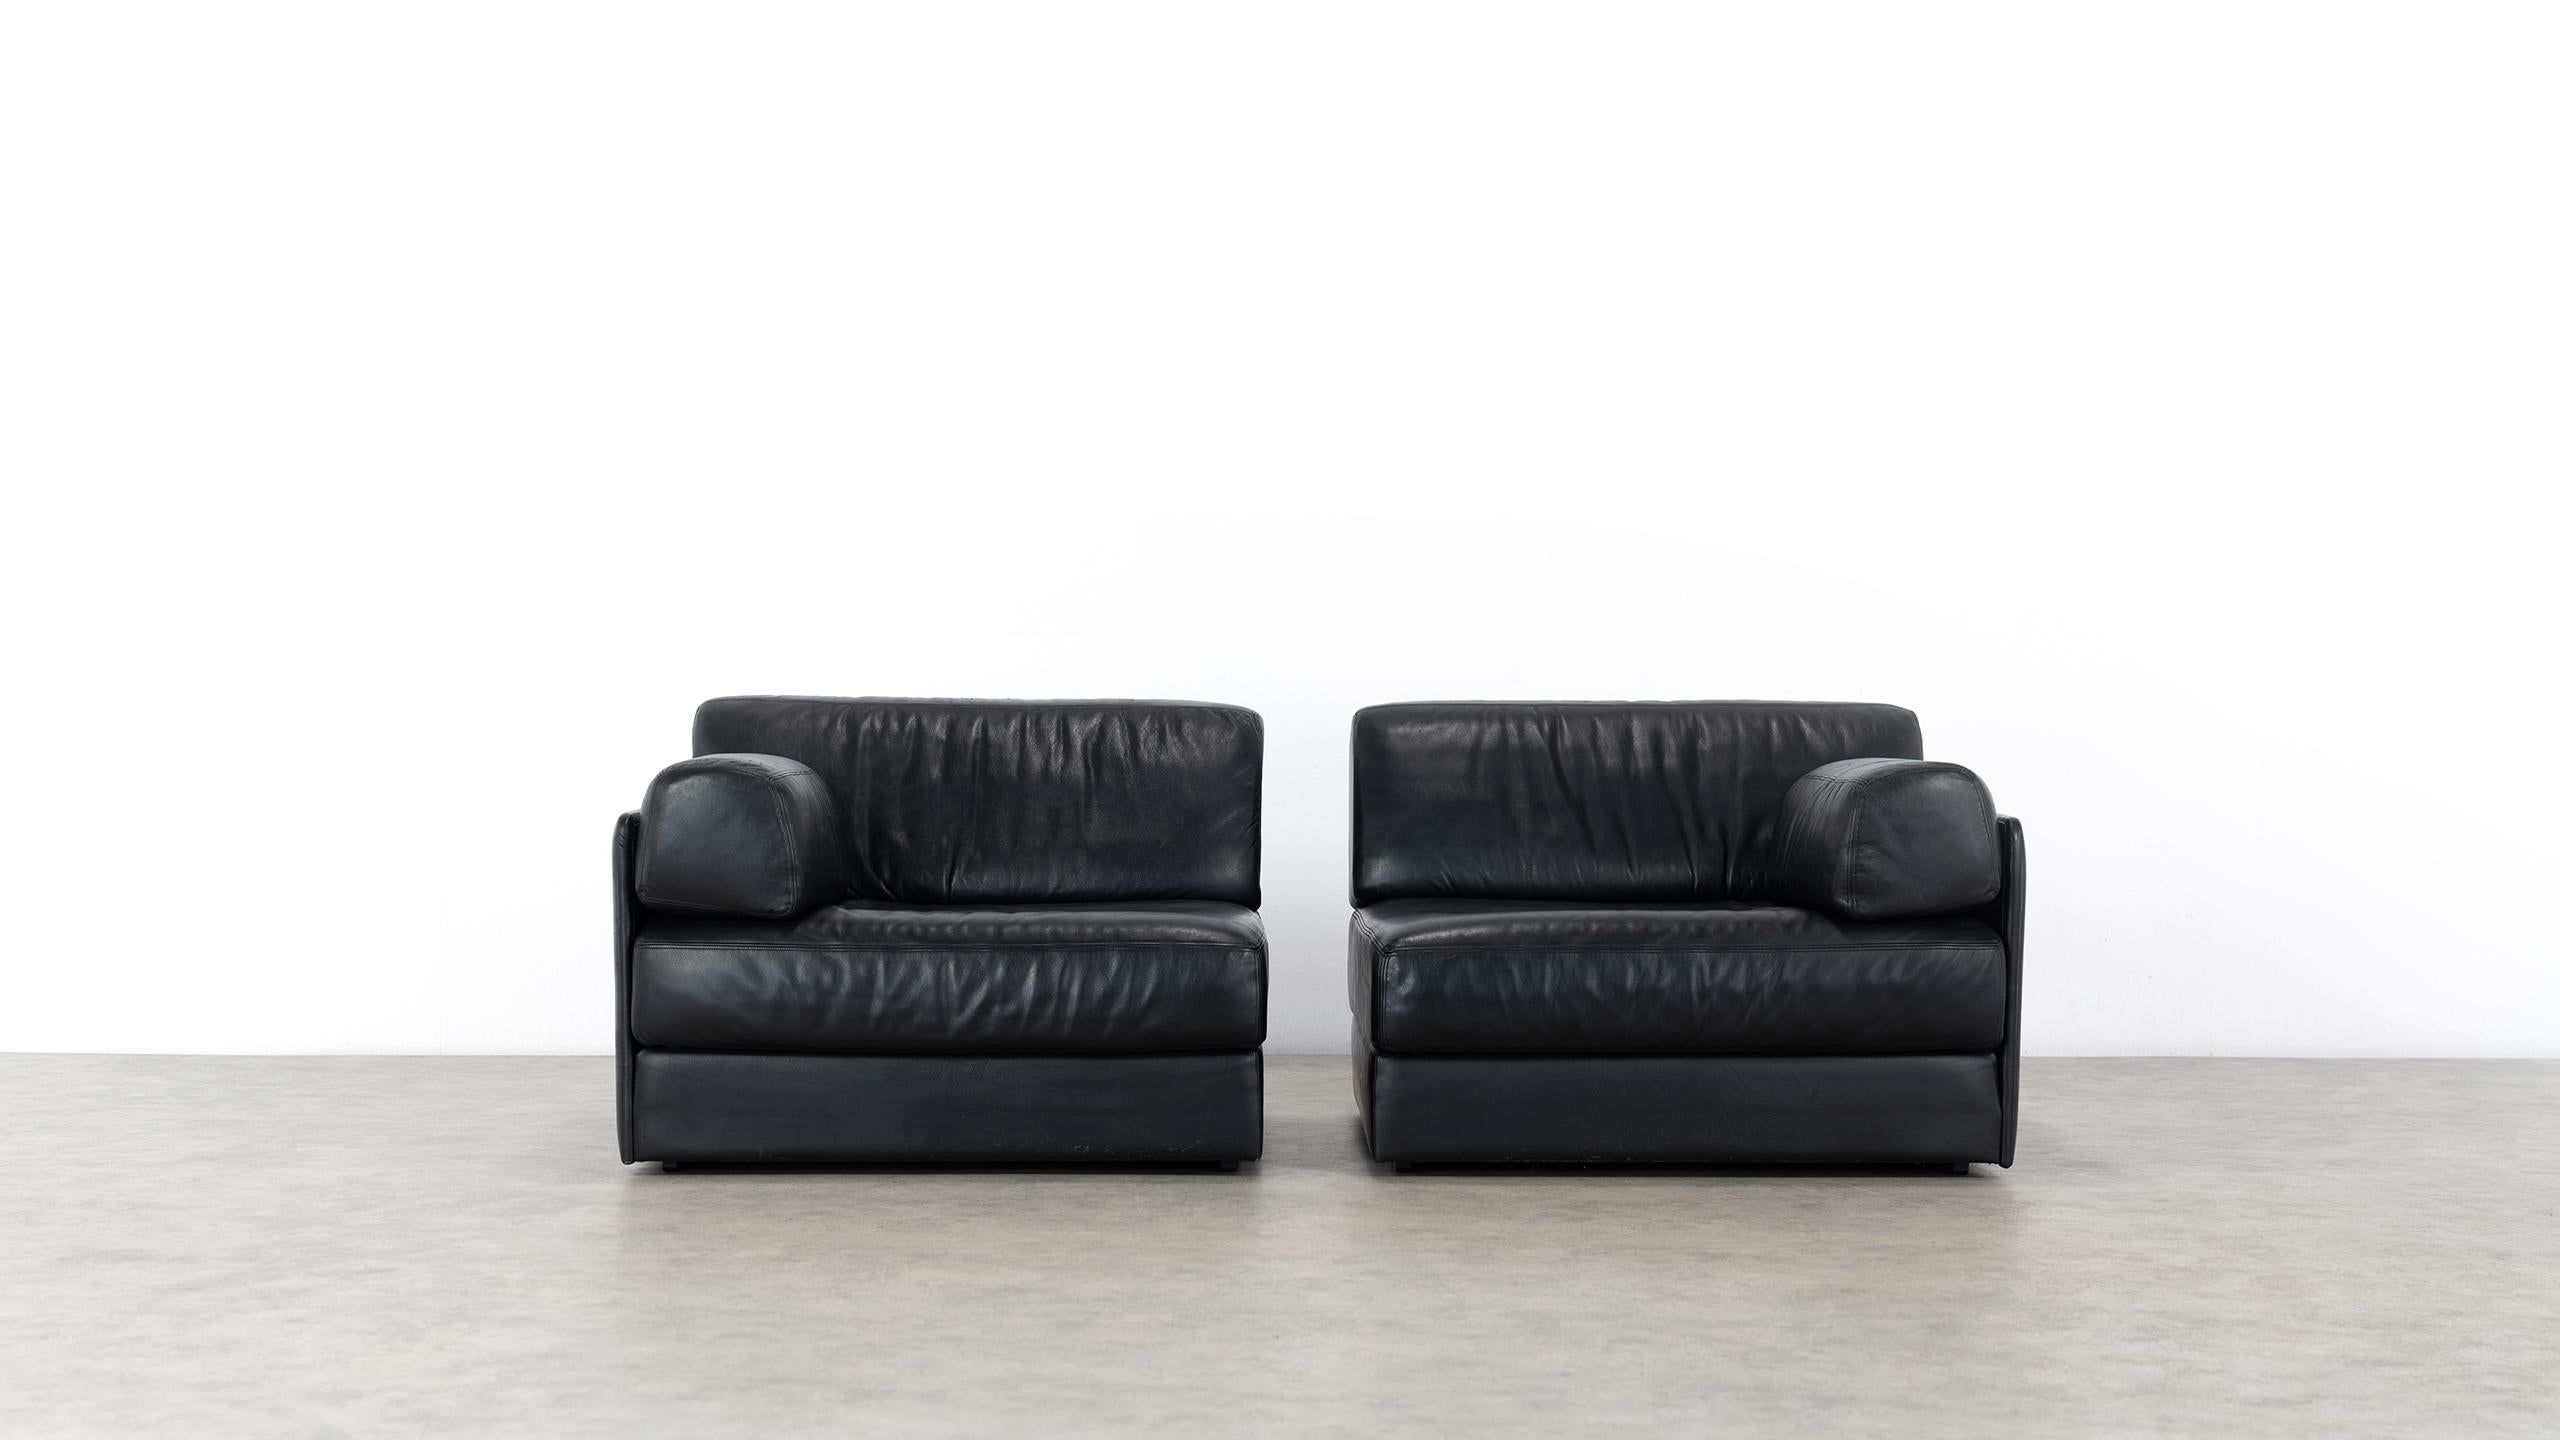 De Sede Ds76, Sofa & Daybed in Black Leather, 1972 by De Sede Design Team 1